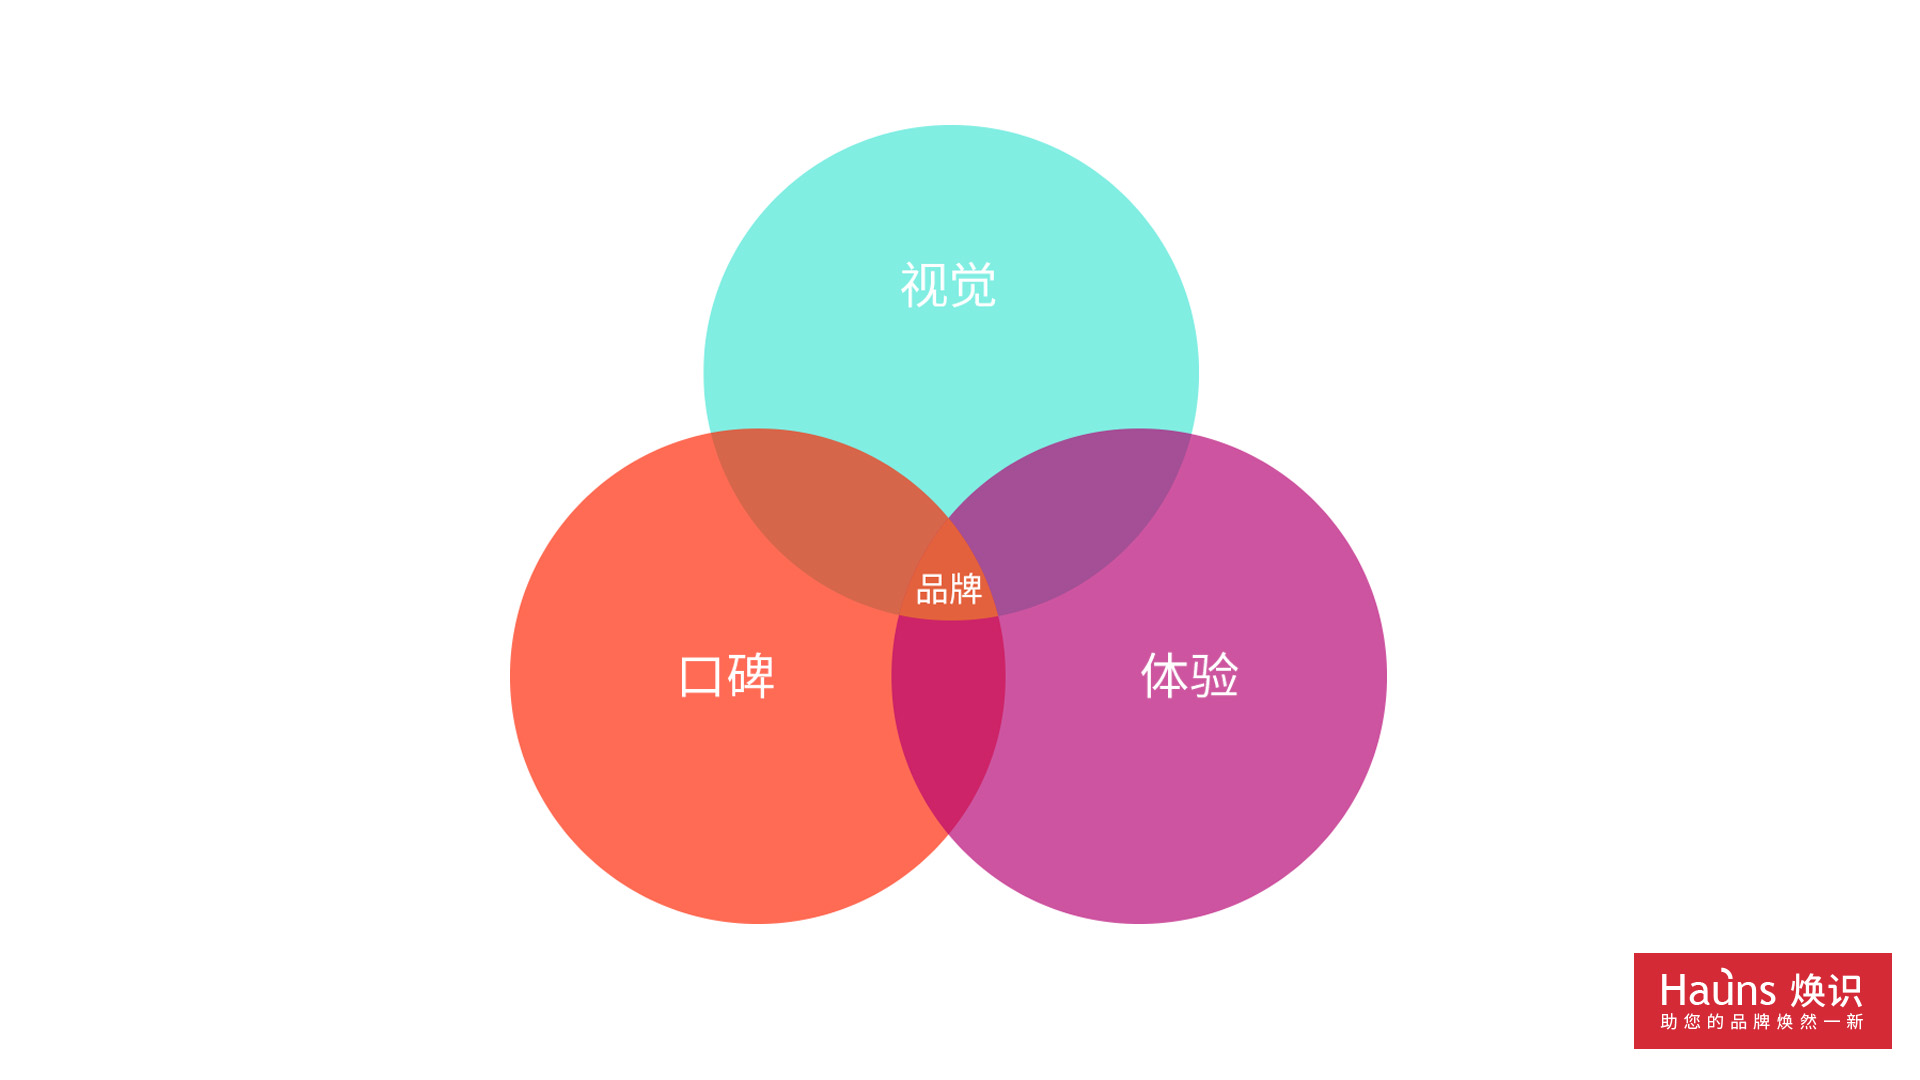 上海vi设计公司针对品牌形象重塑提出的问题